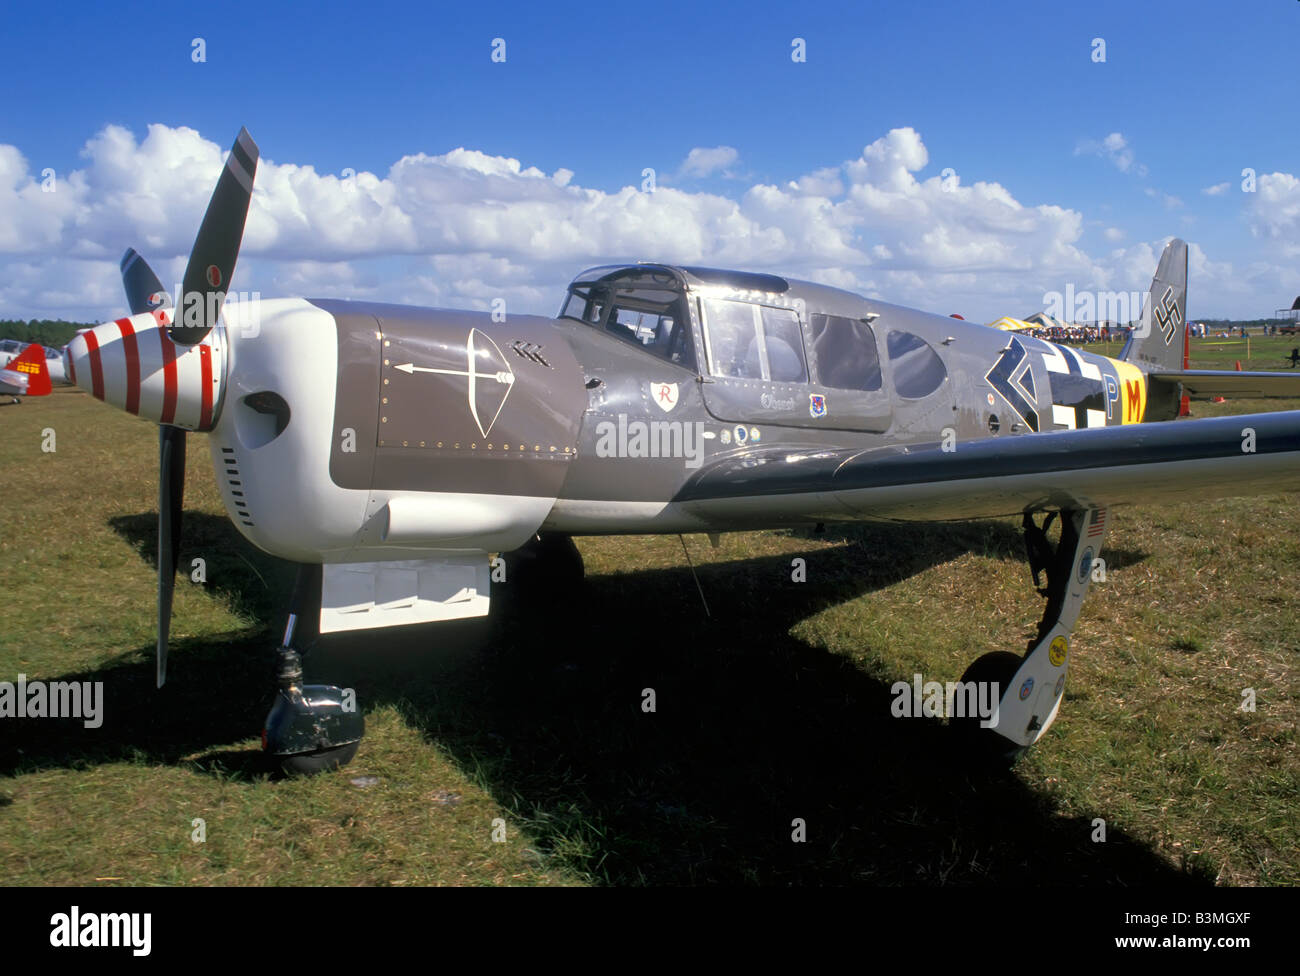 El alemán de la segunda guerra mundial Messerschmitt Bf 109, avión de caza Foto de stock